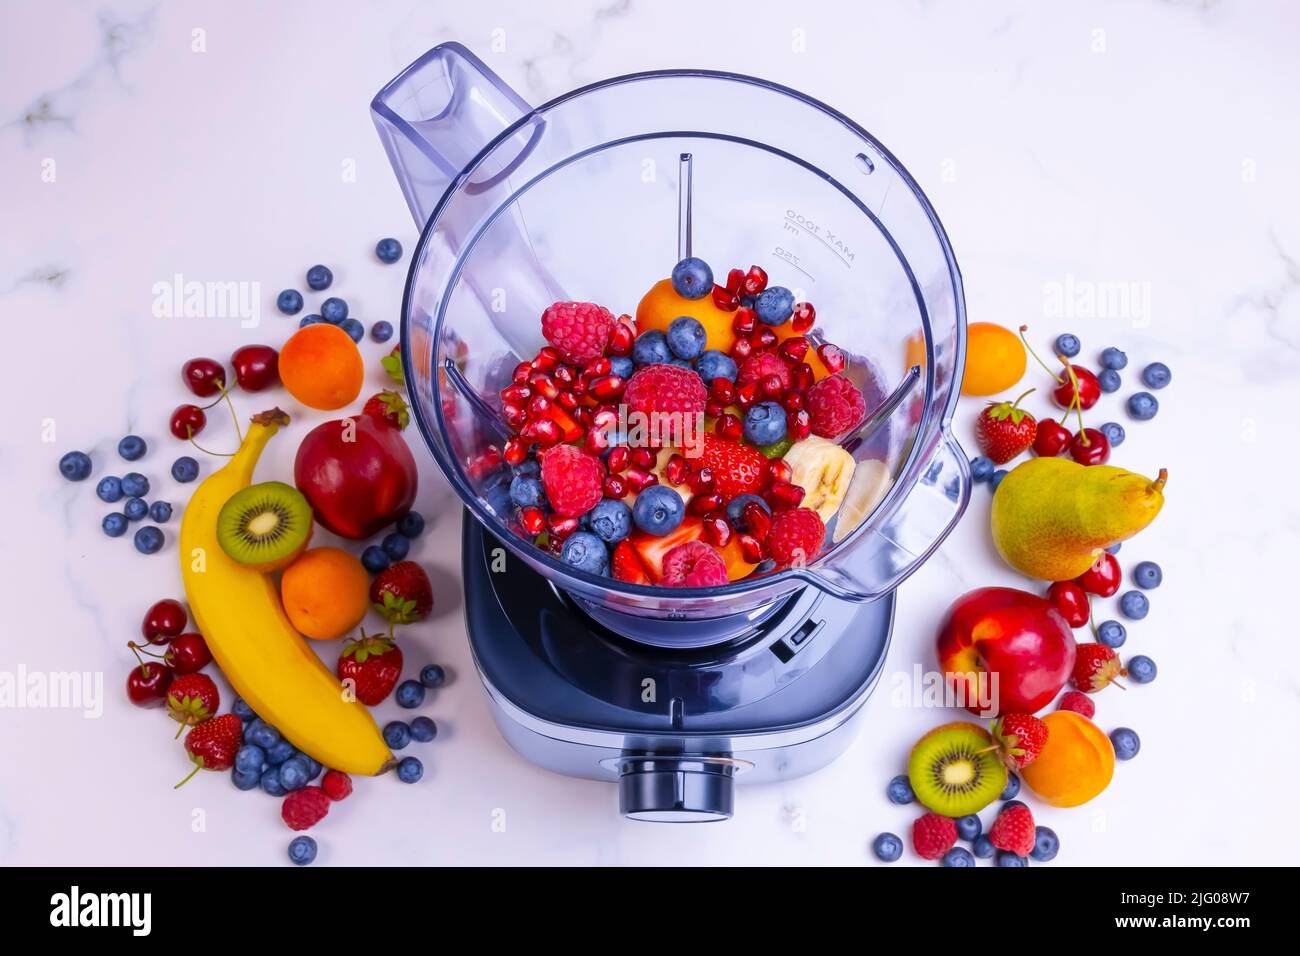 Batido de fruta fresca en la batidora. Preparar una bebida fresca llena de vitaminas para una dieta saludable. Foto de stock